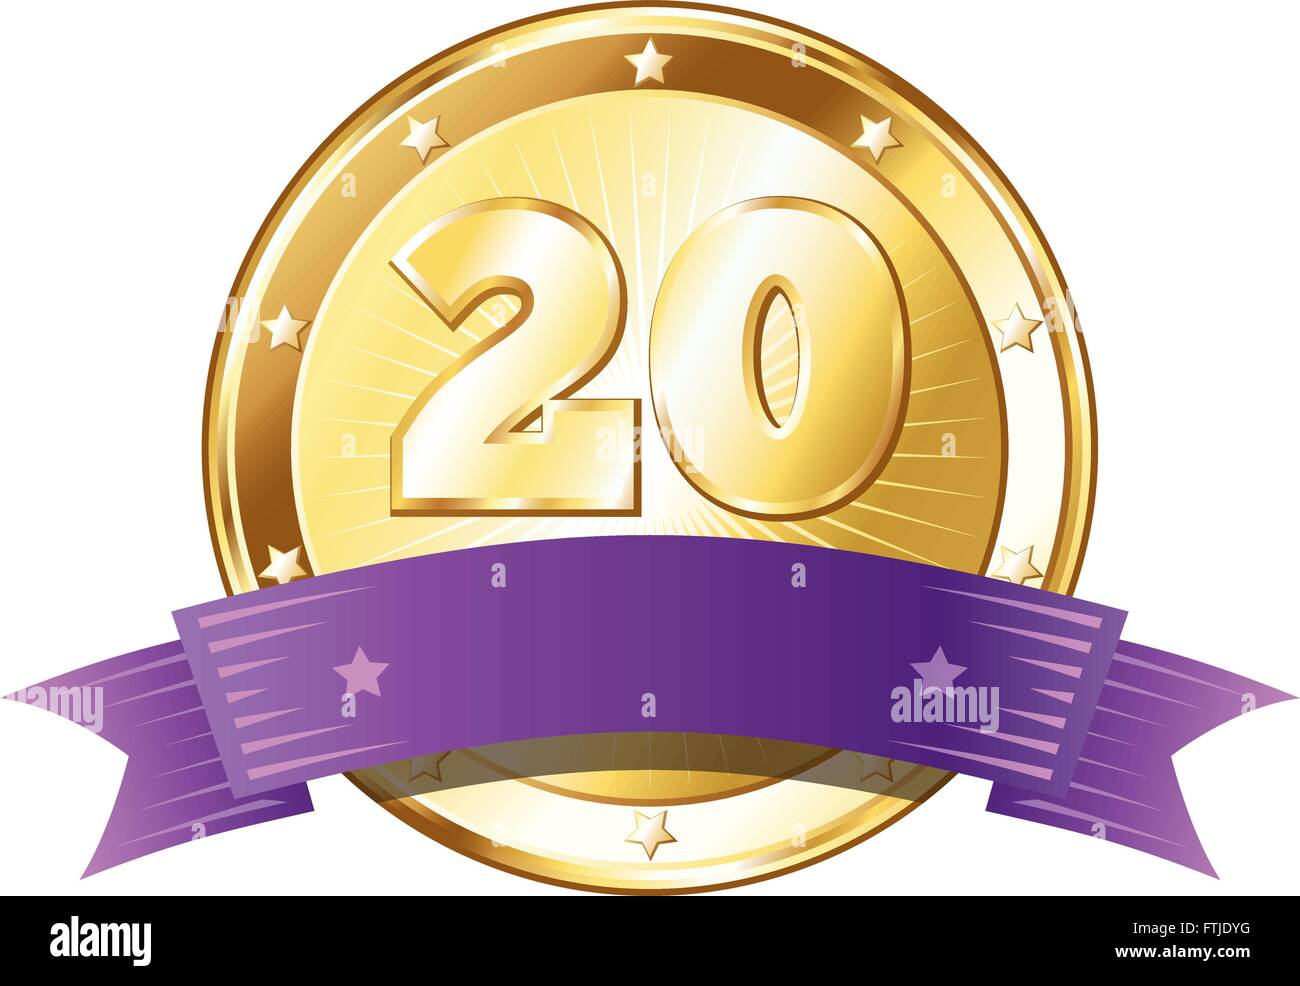 Round a forma di cerchio badge di metallo / sigillo di approvazione in un look d'oro con un nastro di colore viola e il numero venti. Illustrazione Vettoriale